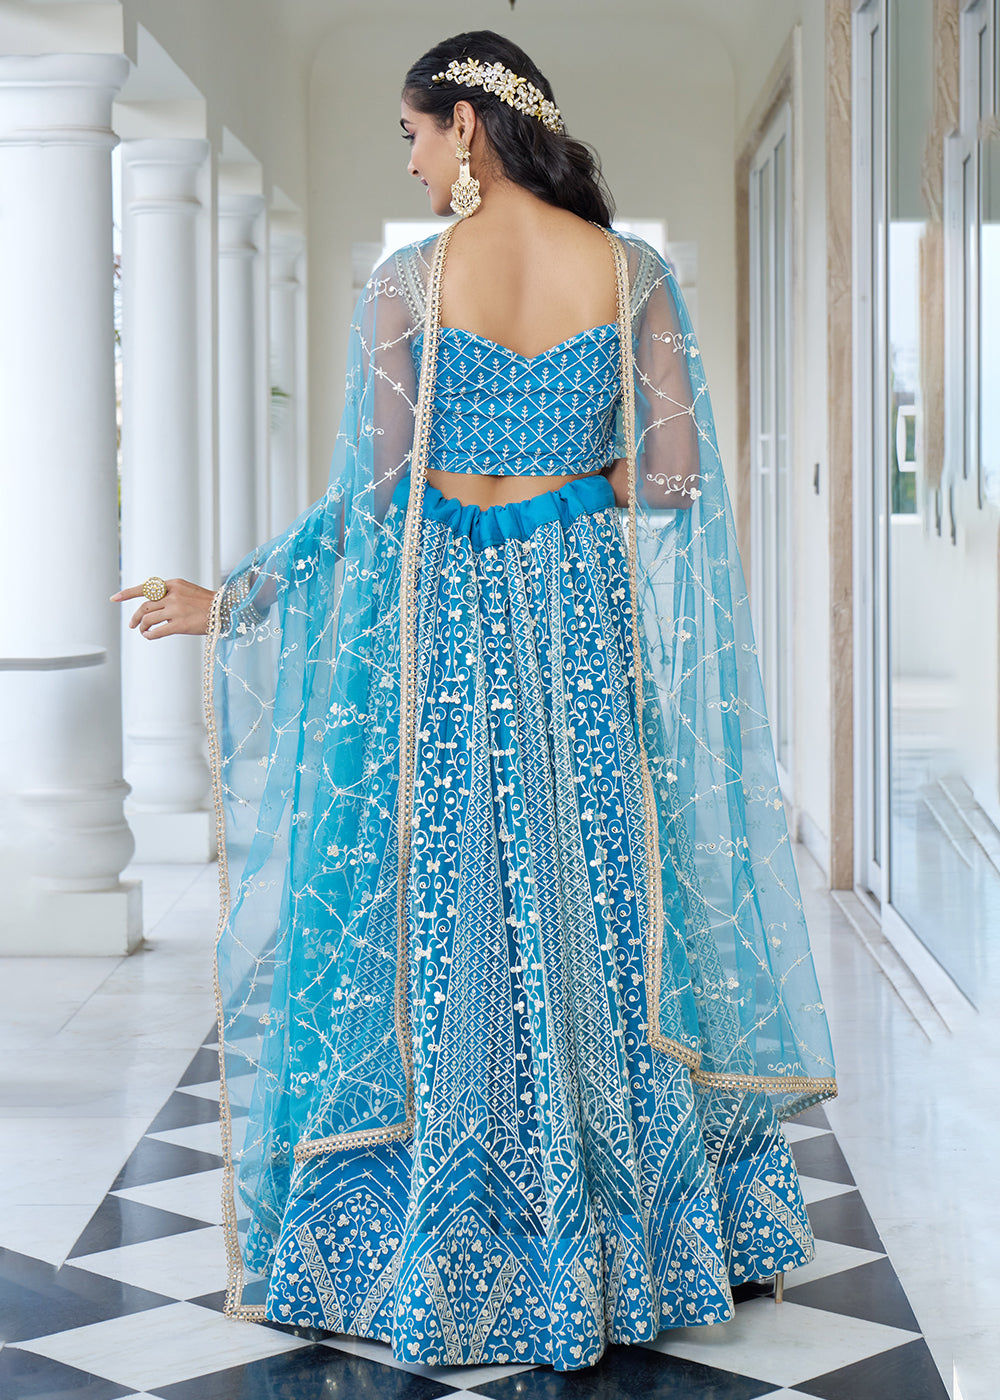 Buy Now Azure Blue Designer Embroidered Wedding Lehenga Choli Online in USA, UK, Canada & Worldwide at Empress Clothing.